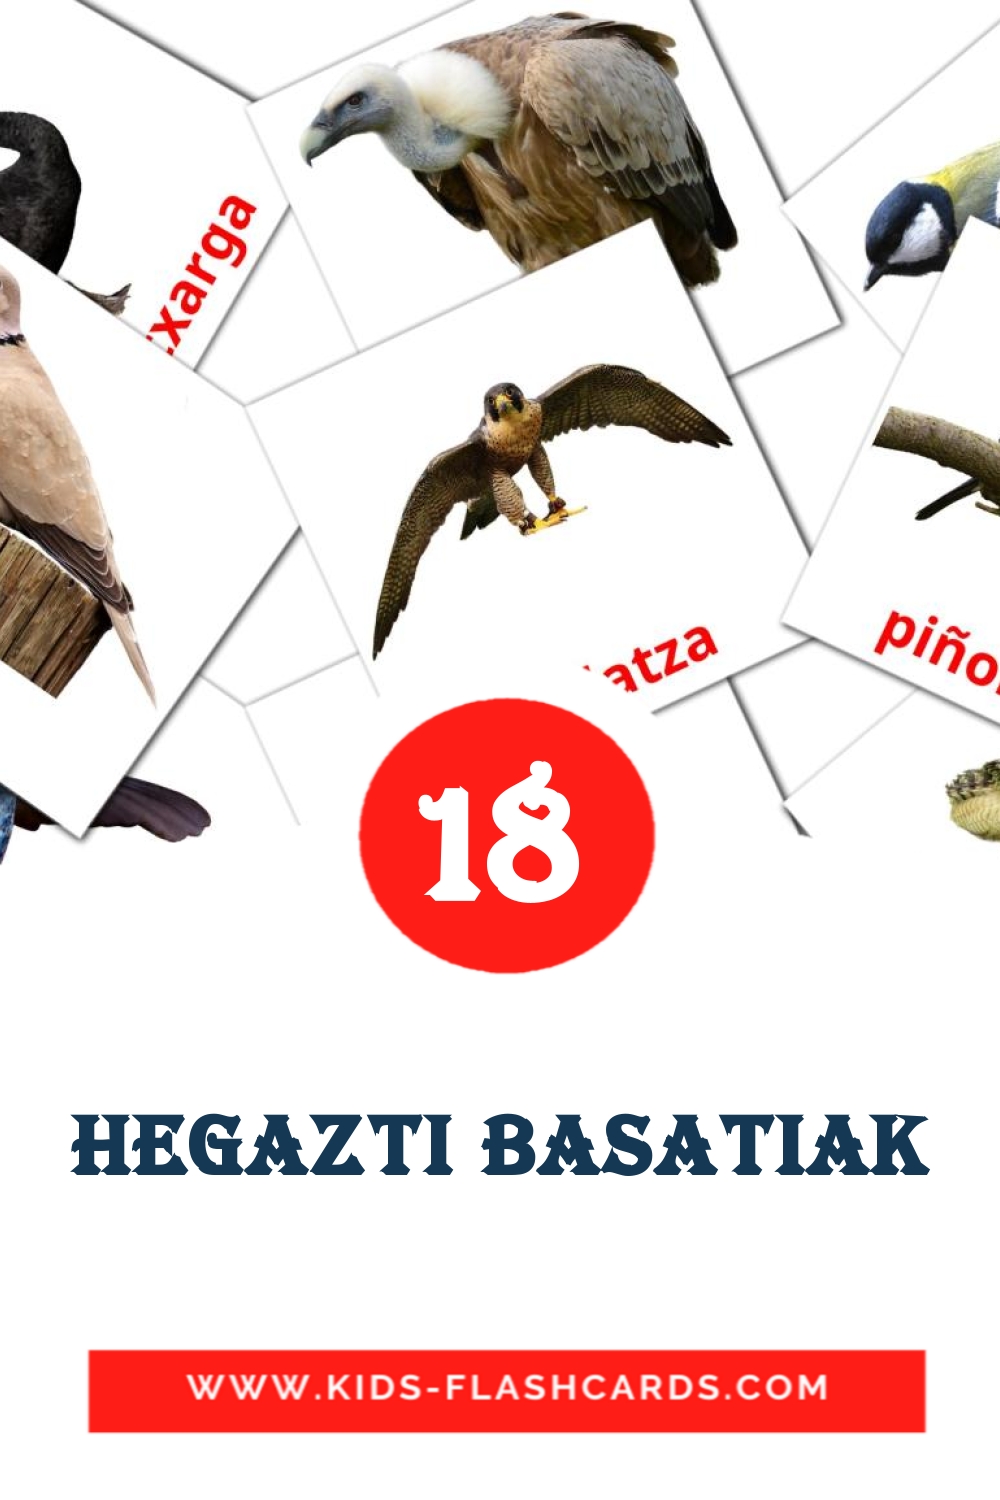 Hegazti basatiak на баскском для Детского Сада (18 карточек)